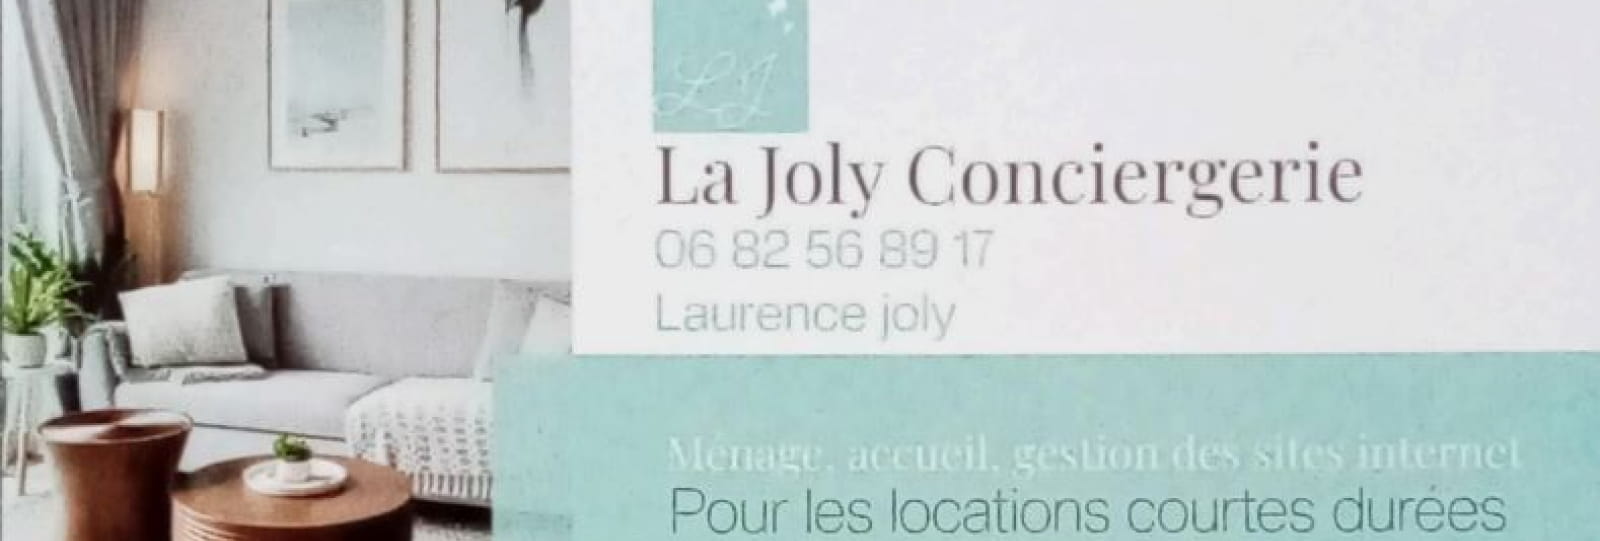 La Joly conciergerie